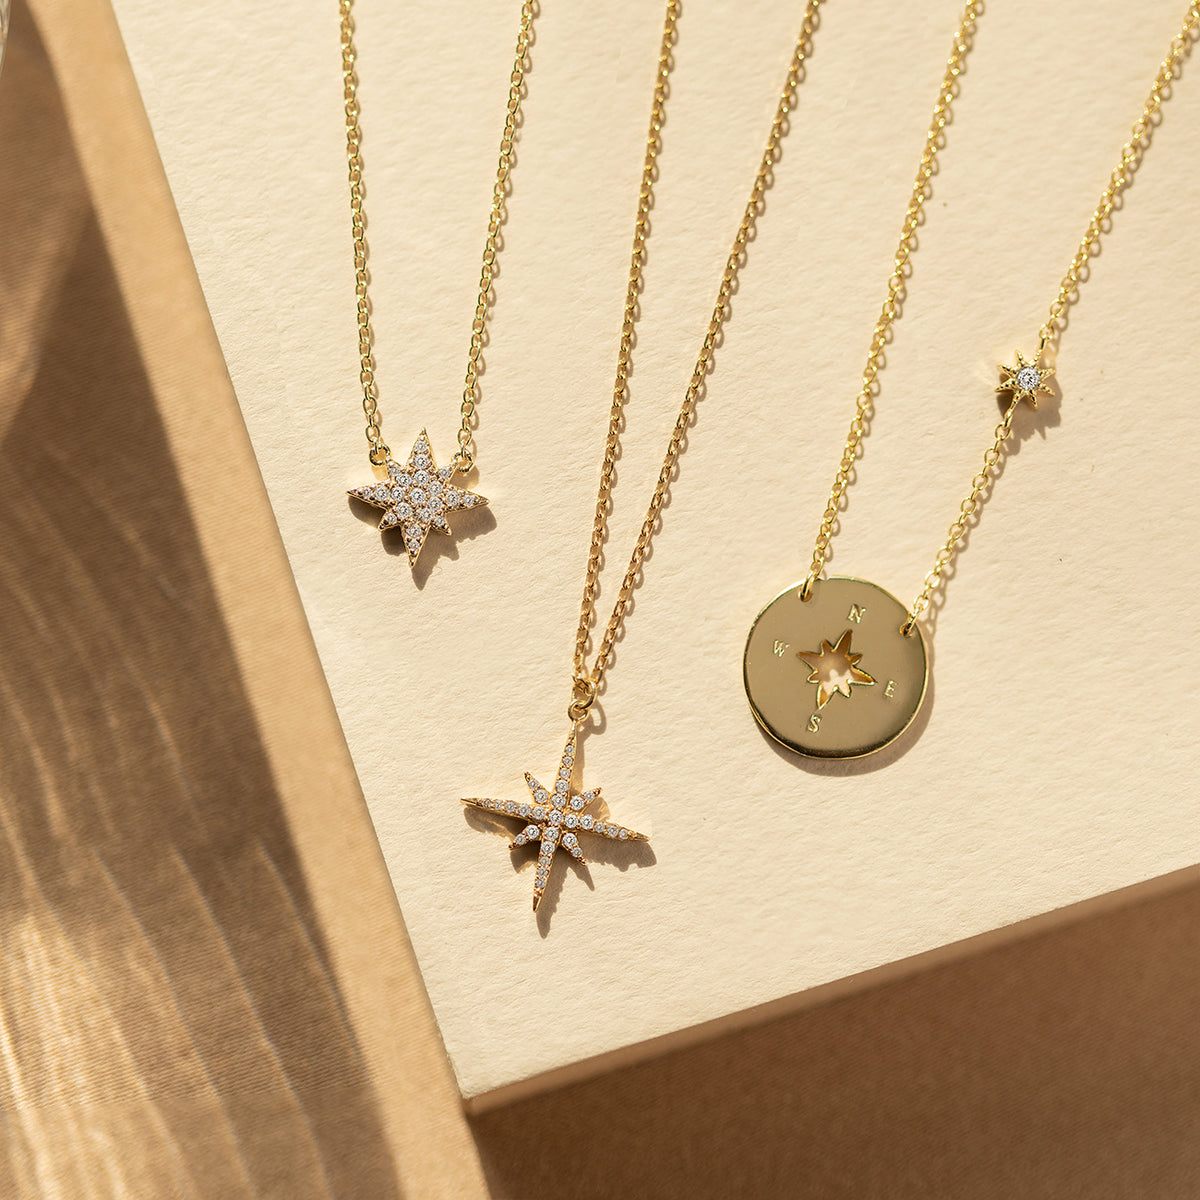 Celestial Star Jewelry, Gold Pendant Necklace, Minimalist Jewelry ...